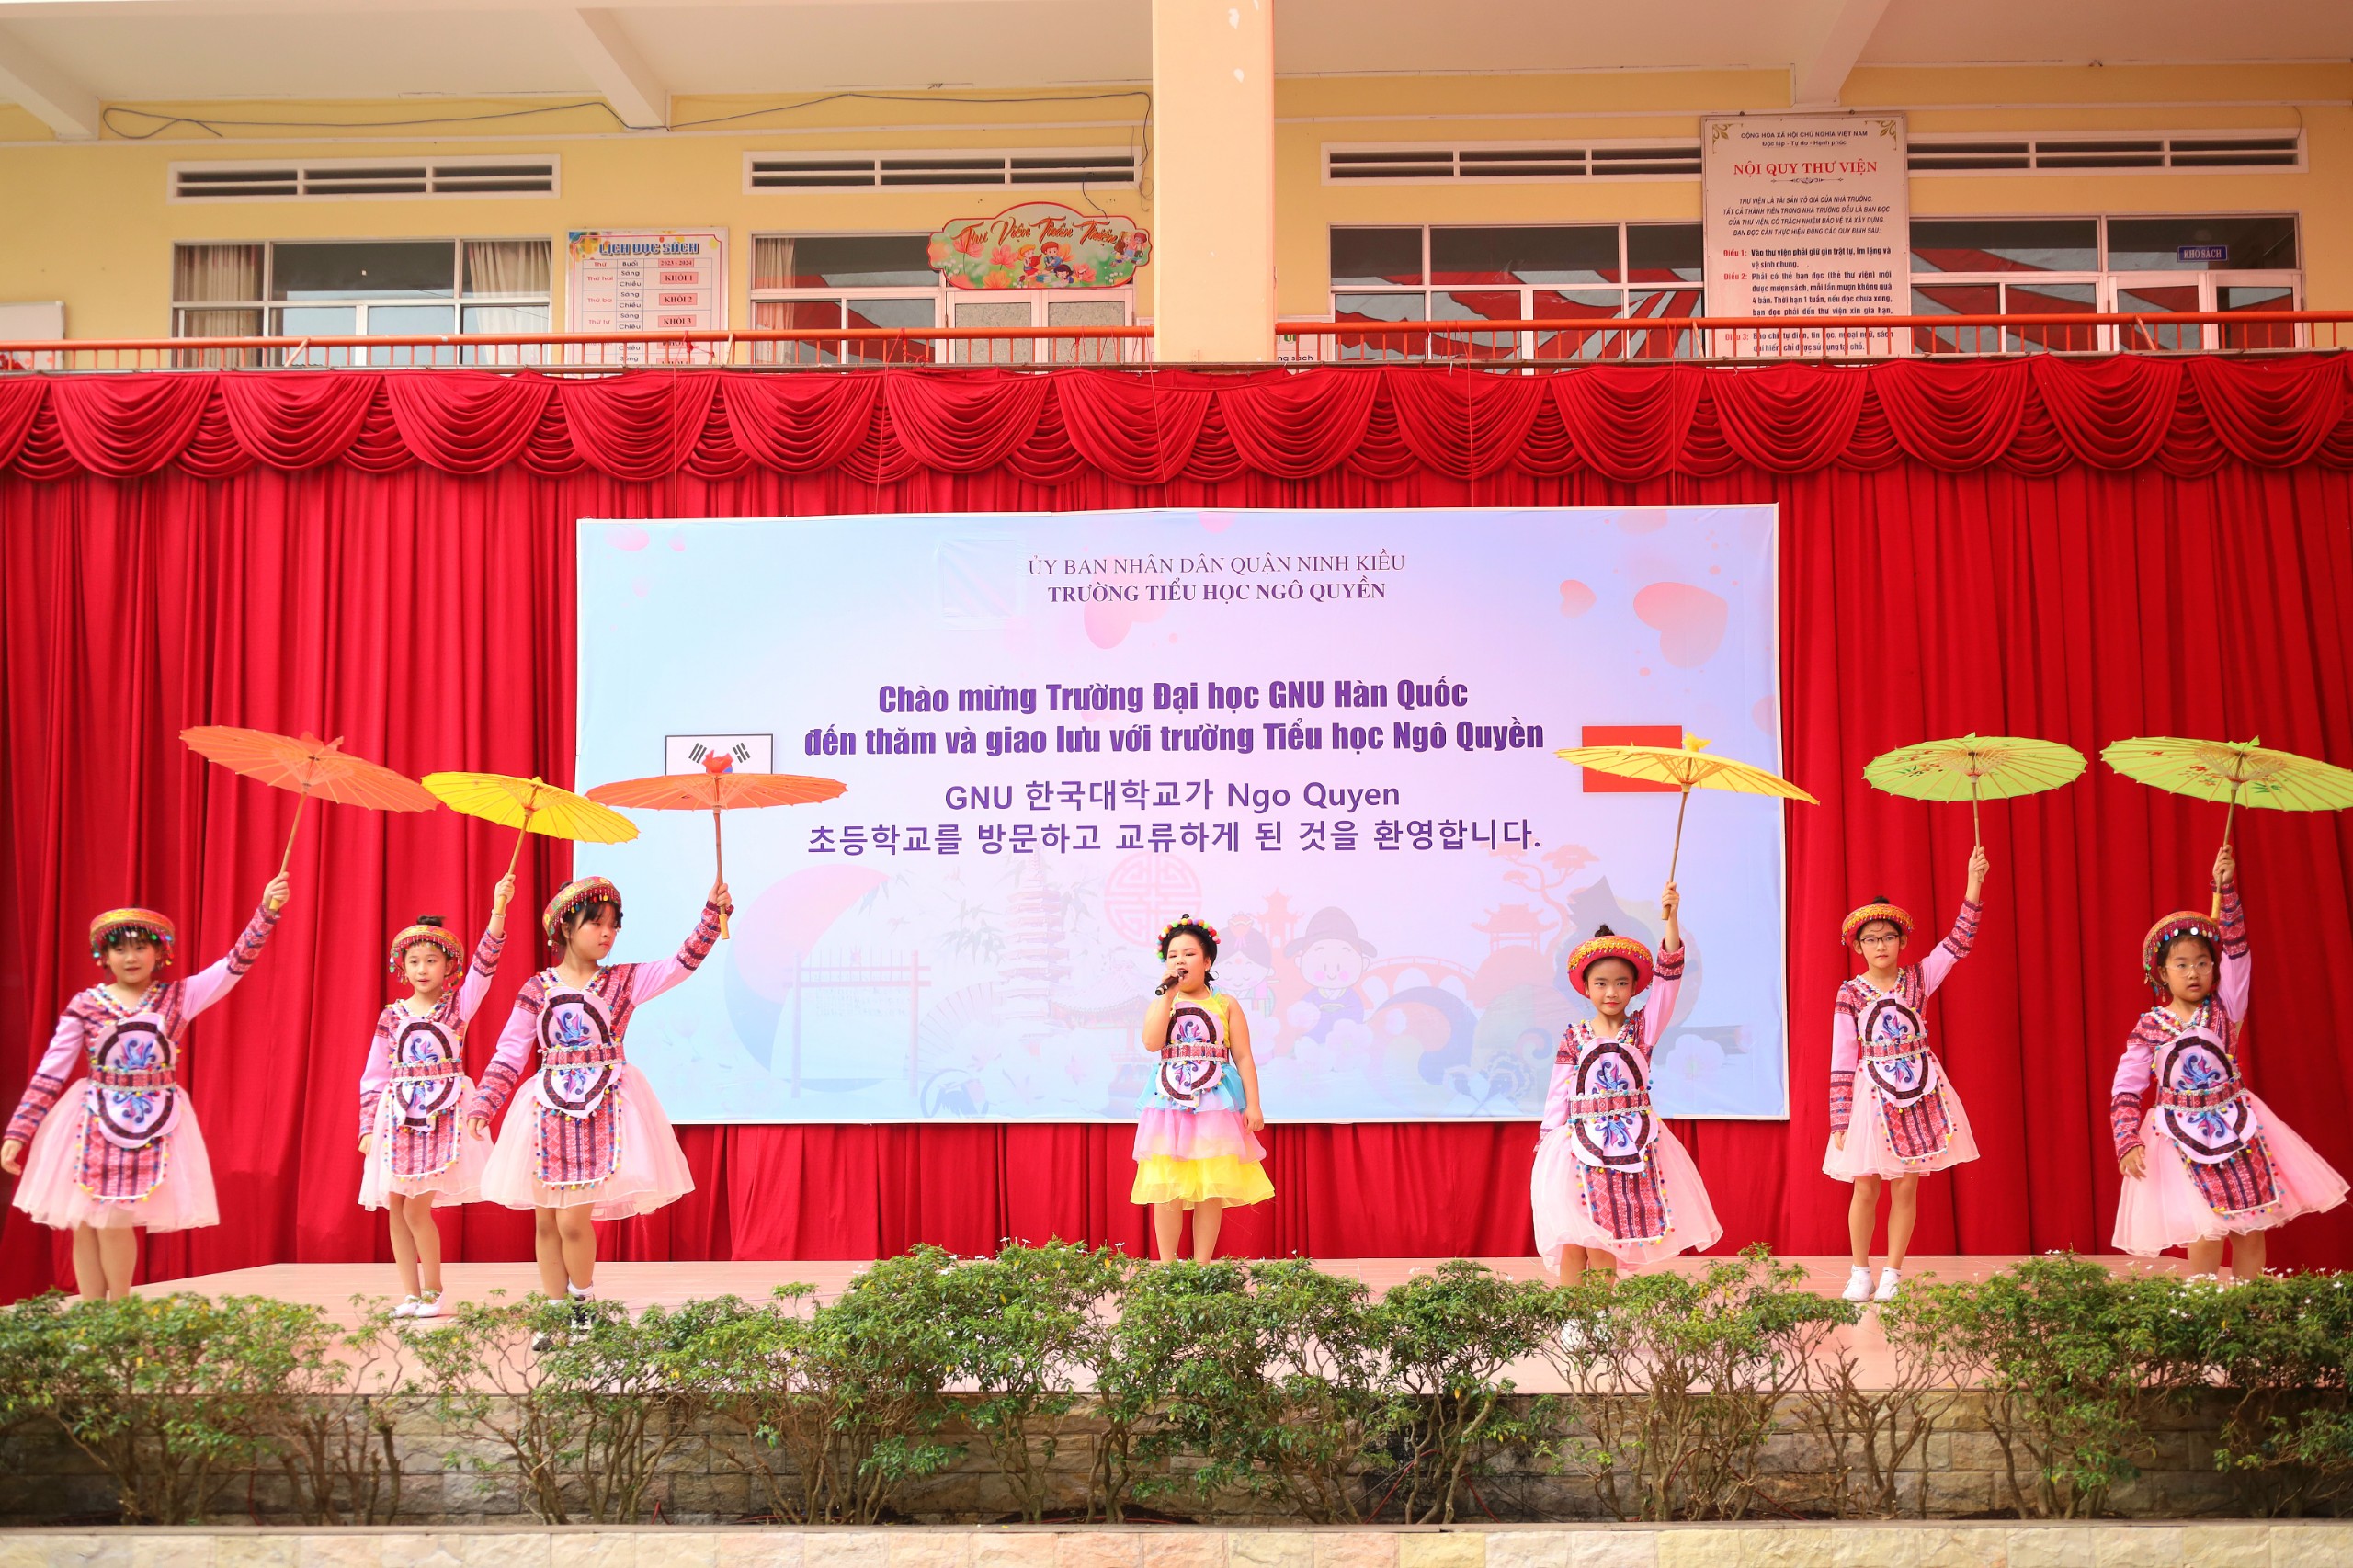 Học sinh Trường Tiểu học Ngô Quyền, quận Ninh Kiều biểu diễn các tiết mục múa hát dân tộc.